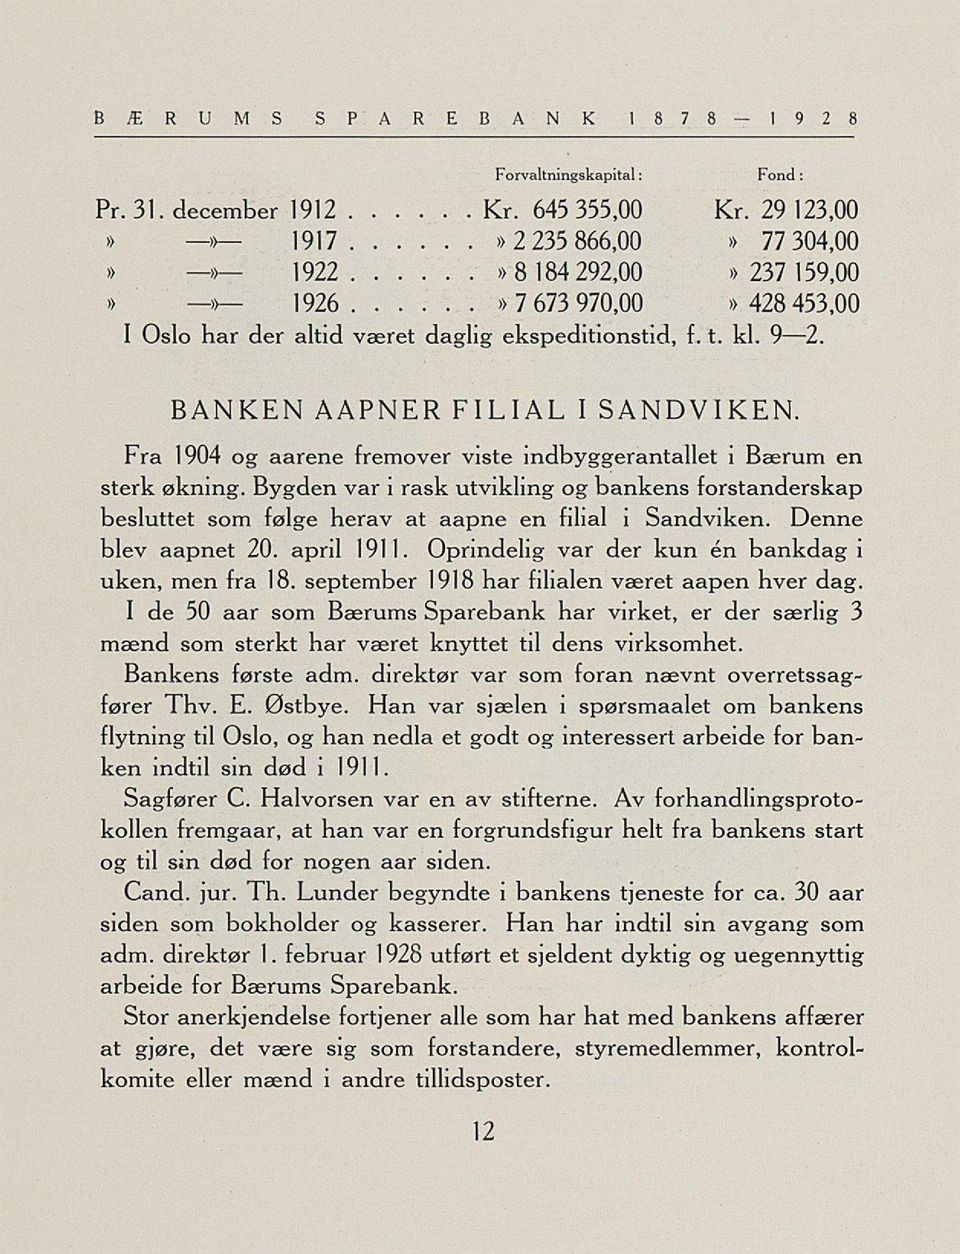 Fra 1904 og aarene fremover viste indbyggerantallet i Bærum en sterk økning. Bygden var i rask utvikling og bankens forstanderskap besluttet som følge herav at aapne en filial i Sandviken.